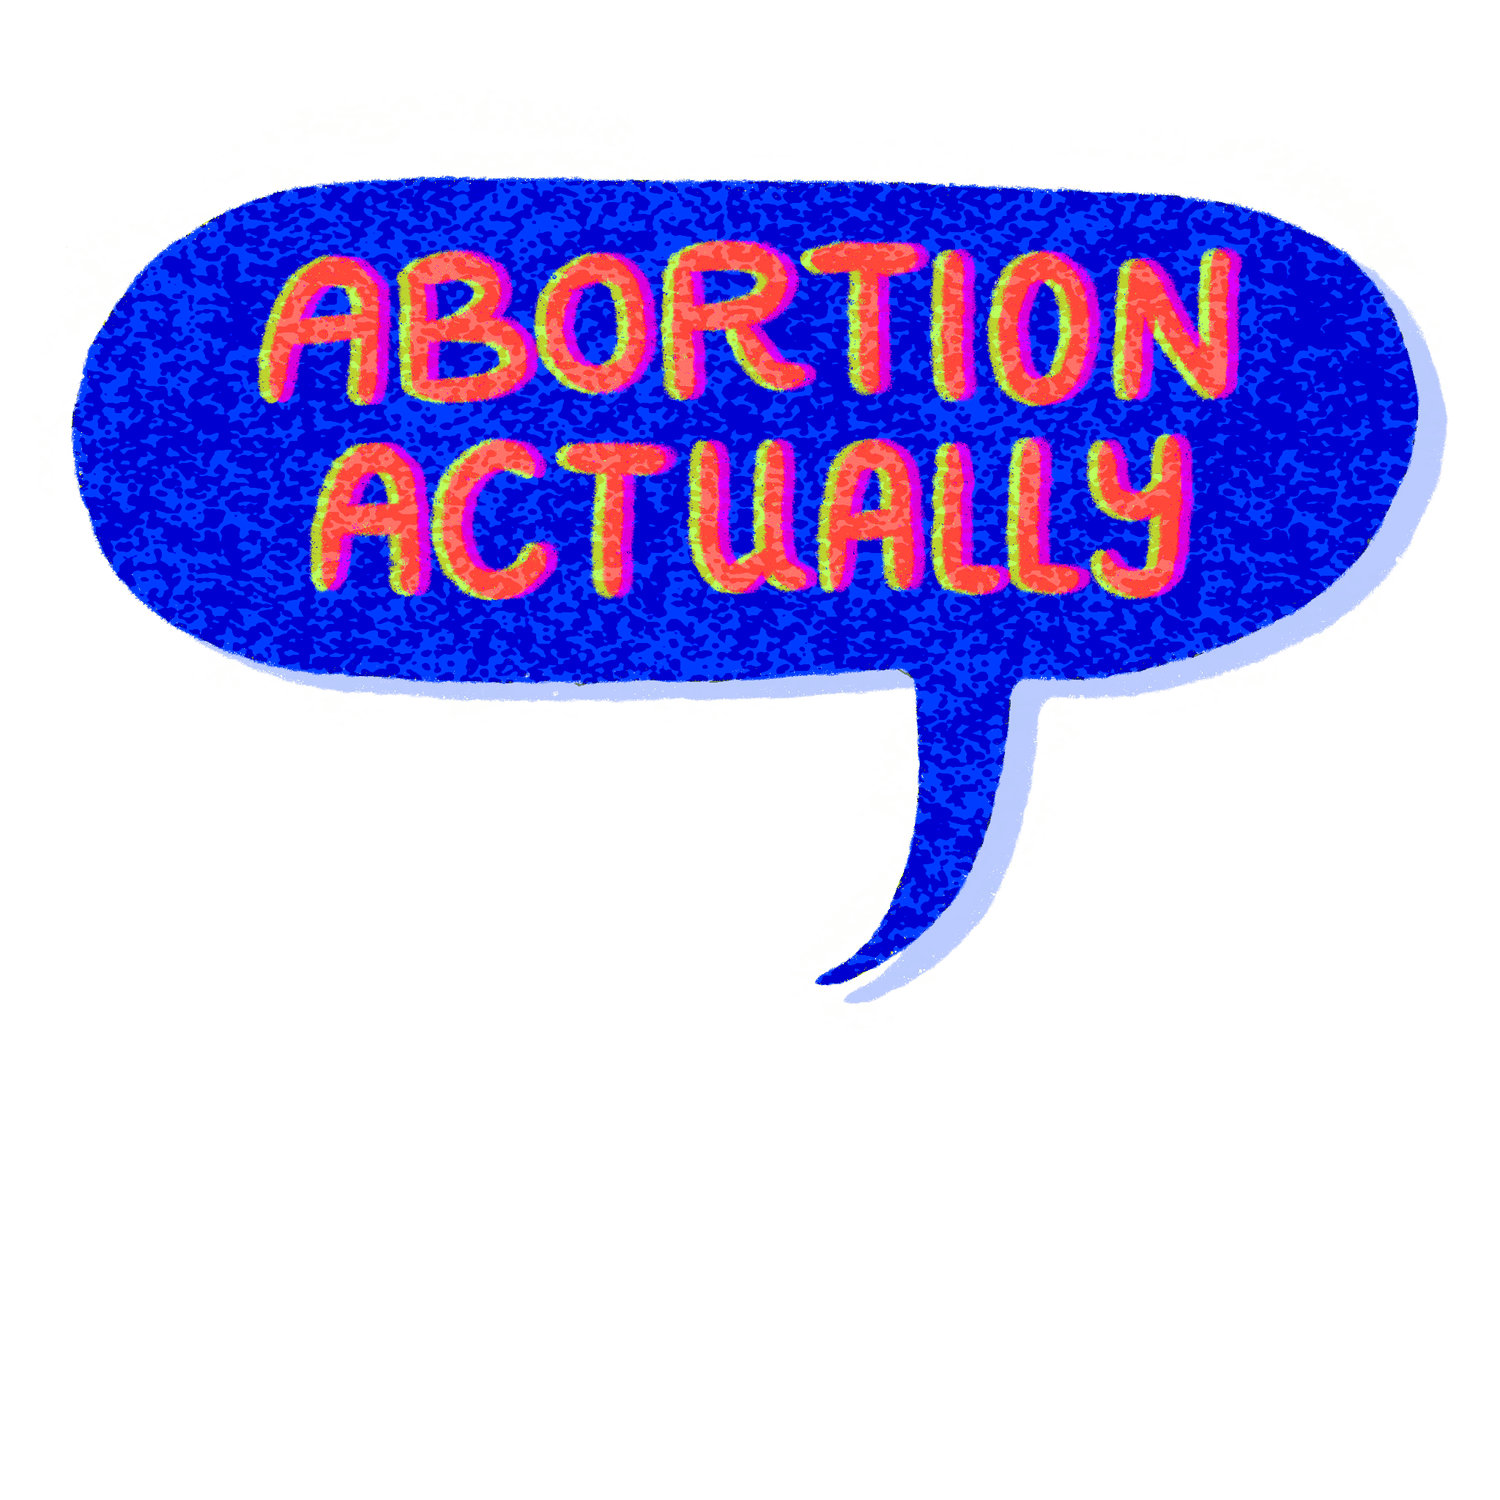 ABORTION ACTUALLY